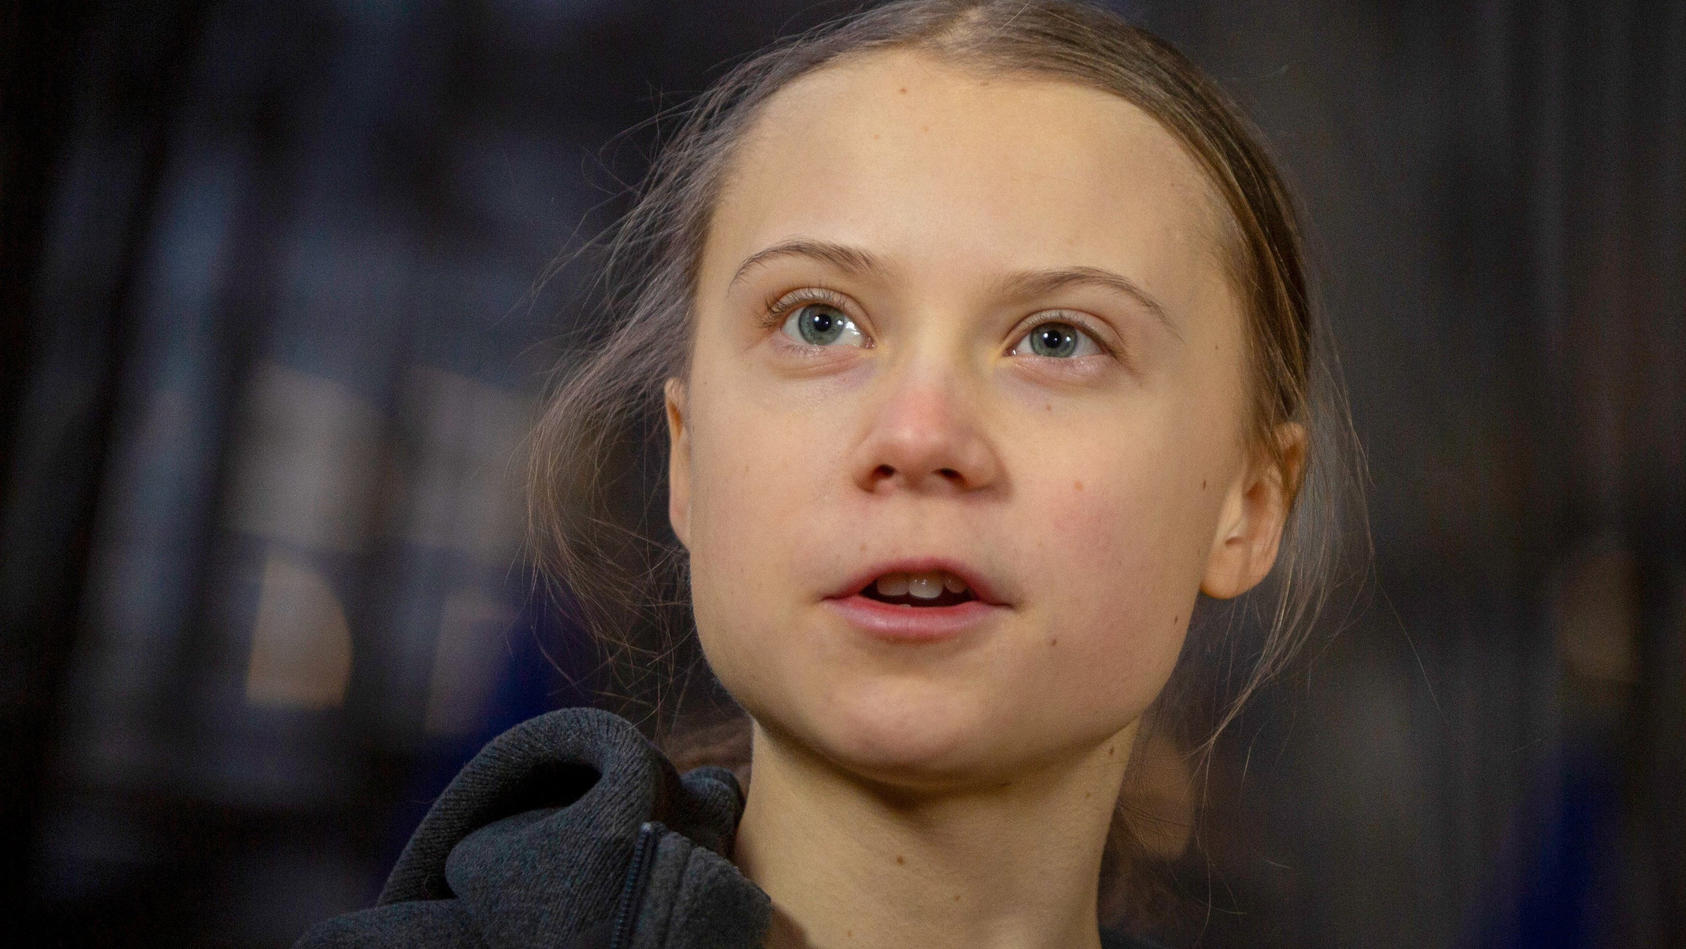 ARCHIV - 05.03.2020, Belgien, Brüssel: Greta Thunberg, schwedische Klimaaktivistin, spricht zu Journalisten, als sie zu einer Sitzung des Umweltrates im Gebäude des Europäischen Rates in Brüssel eintrifft. Thunberg setzt im Kampf gegen die Klima- und